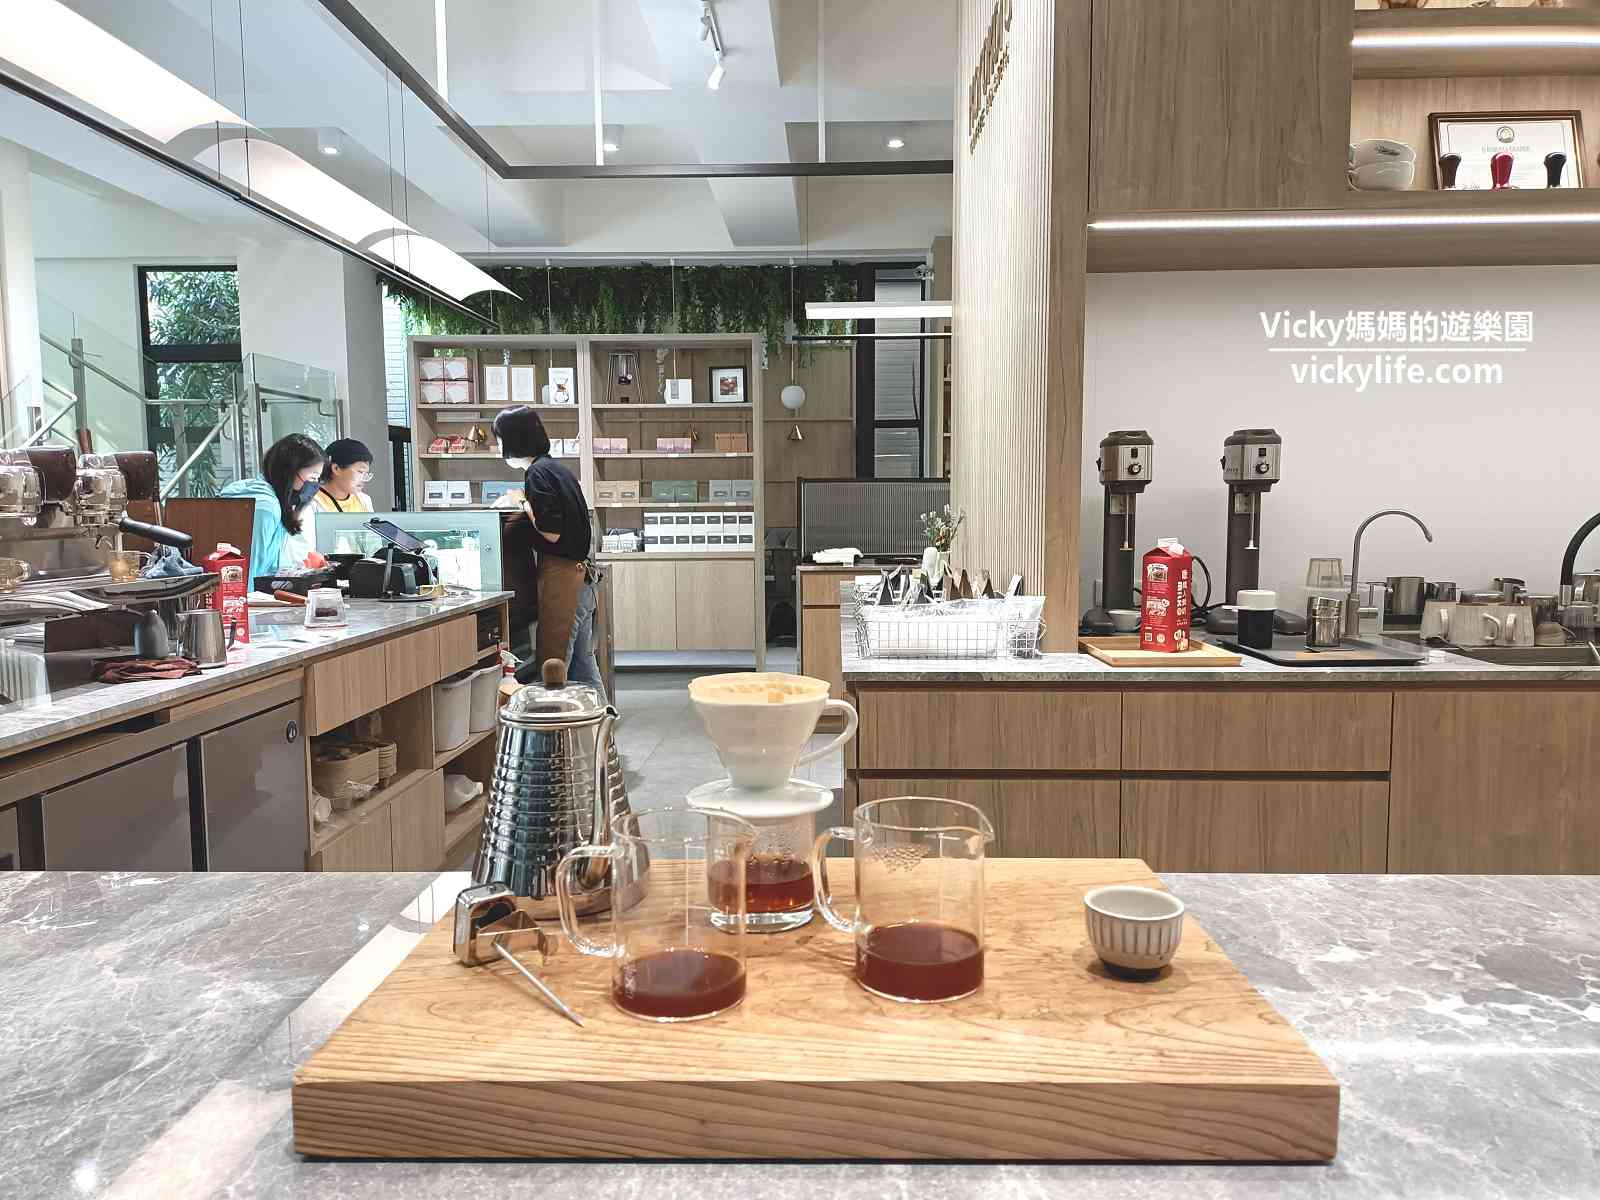 台南咖啡︱Korokoro Coffee：安平純白挑高現代美學咖啡廳，咖啡口感香醇，甜點綿密滑順(菜單)